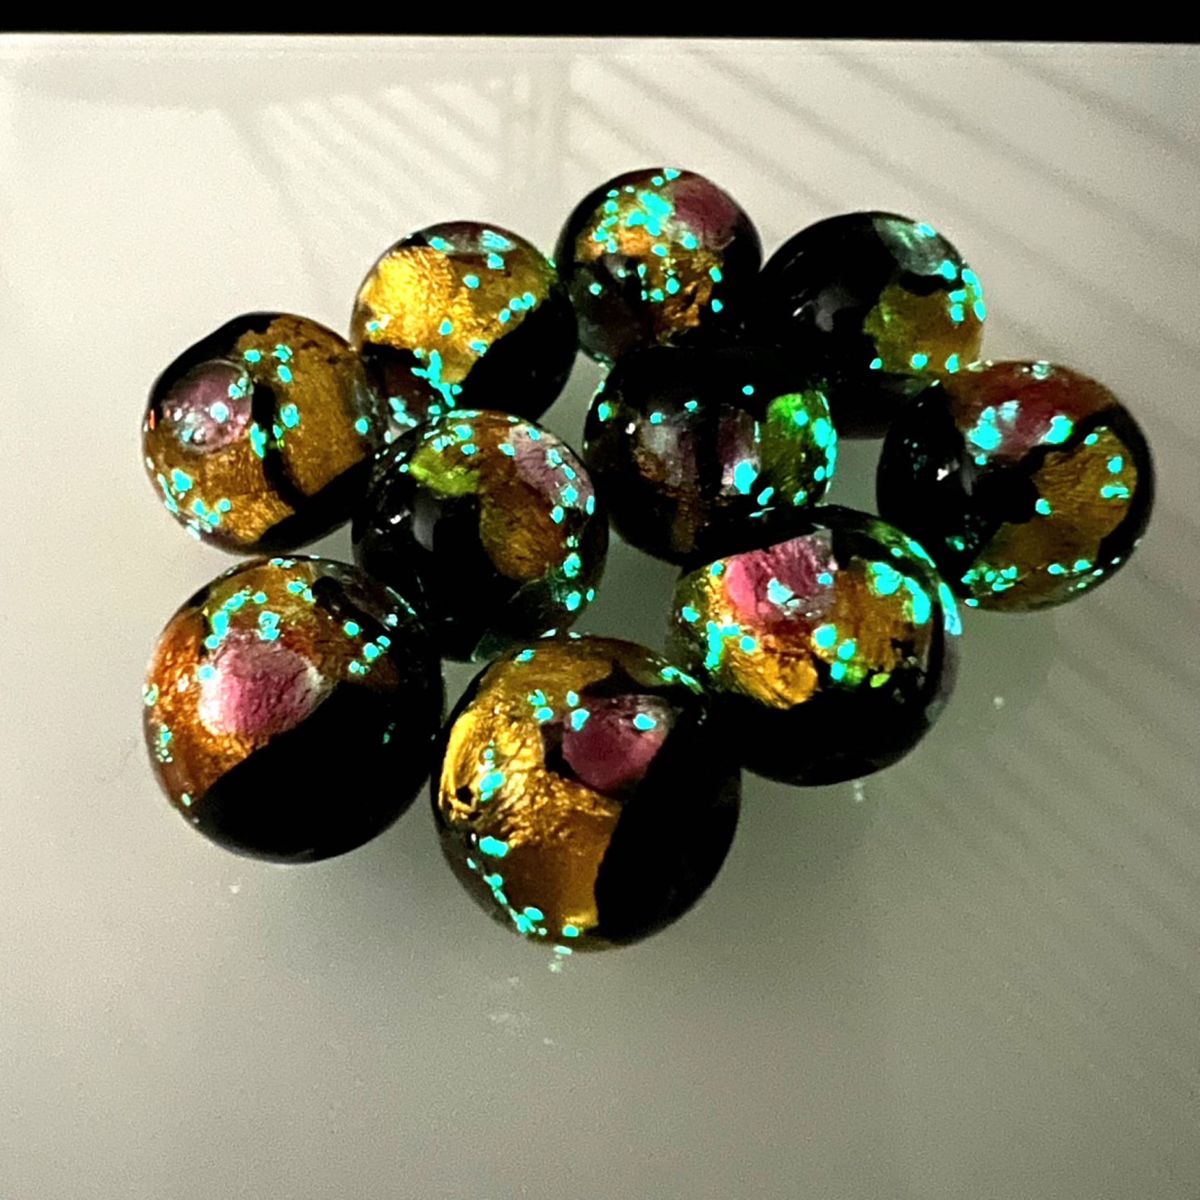 蓄光 ホタルガラス 8mm 10個セット ピンクゴールド沖縄とんぼ玉 とんぼガラス 沖縄とんぼ玉 とんぼガラス 